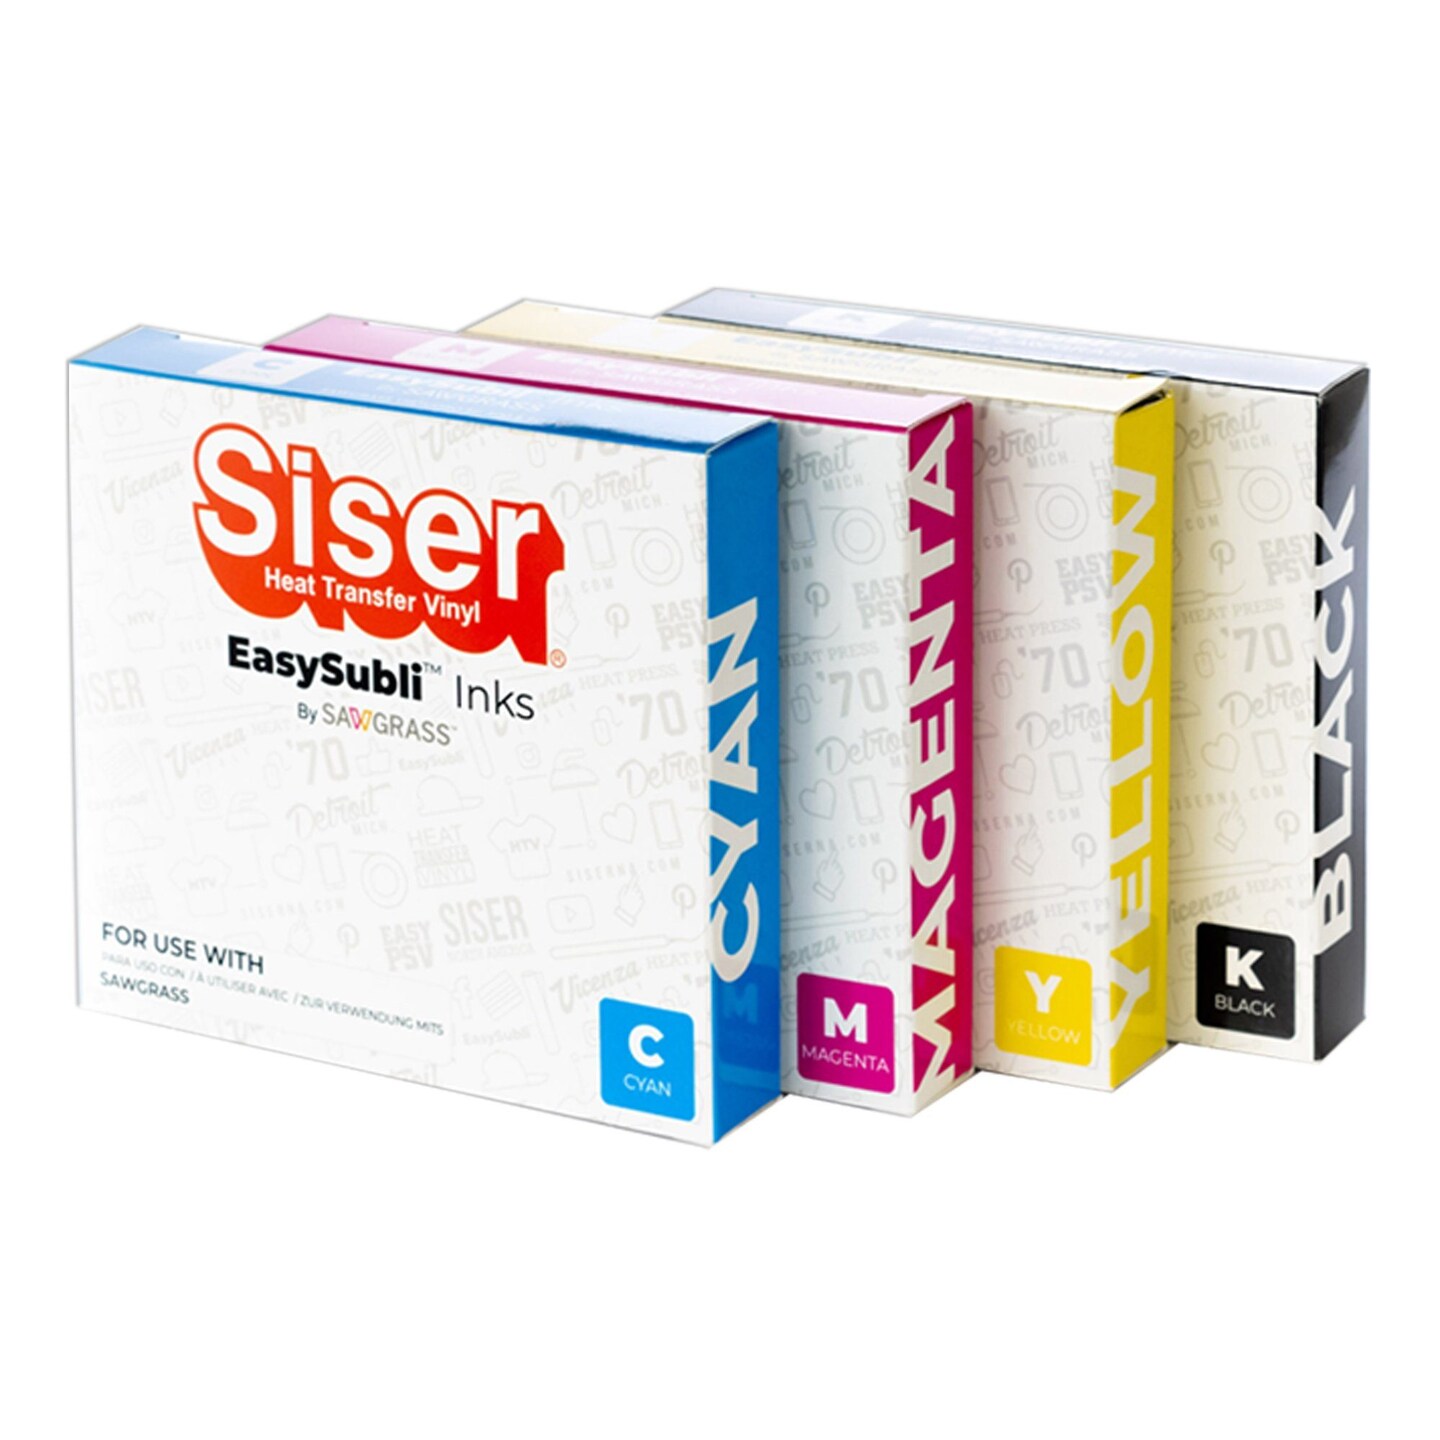 Siser EasySubli Yellow Ink for Sawgrass SG500 & SG1000 | 31 | Michaels